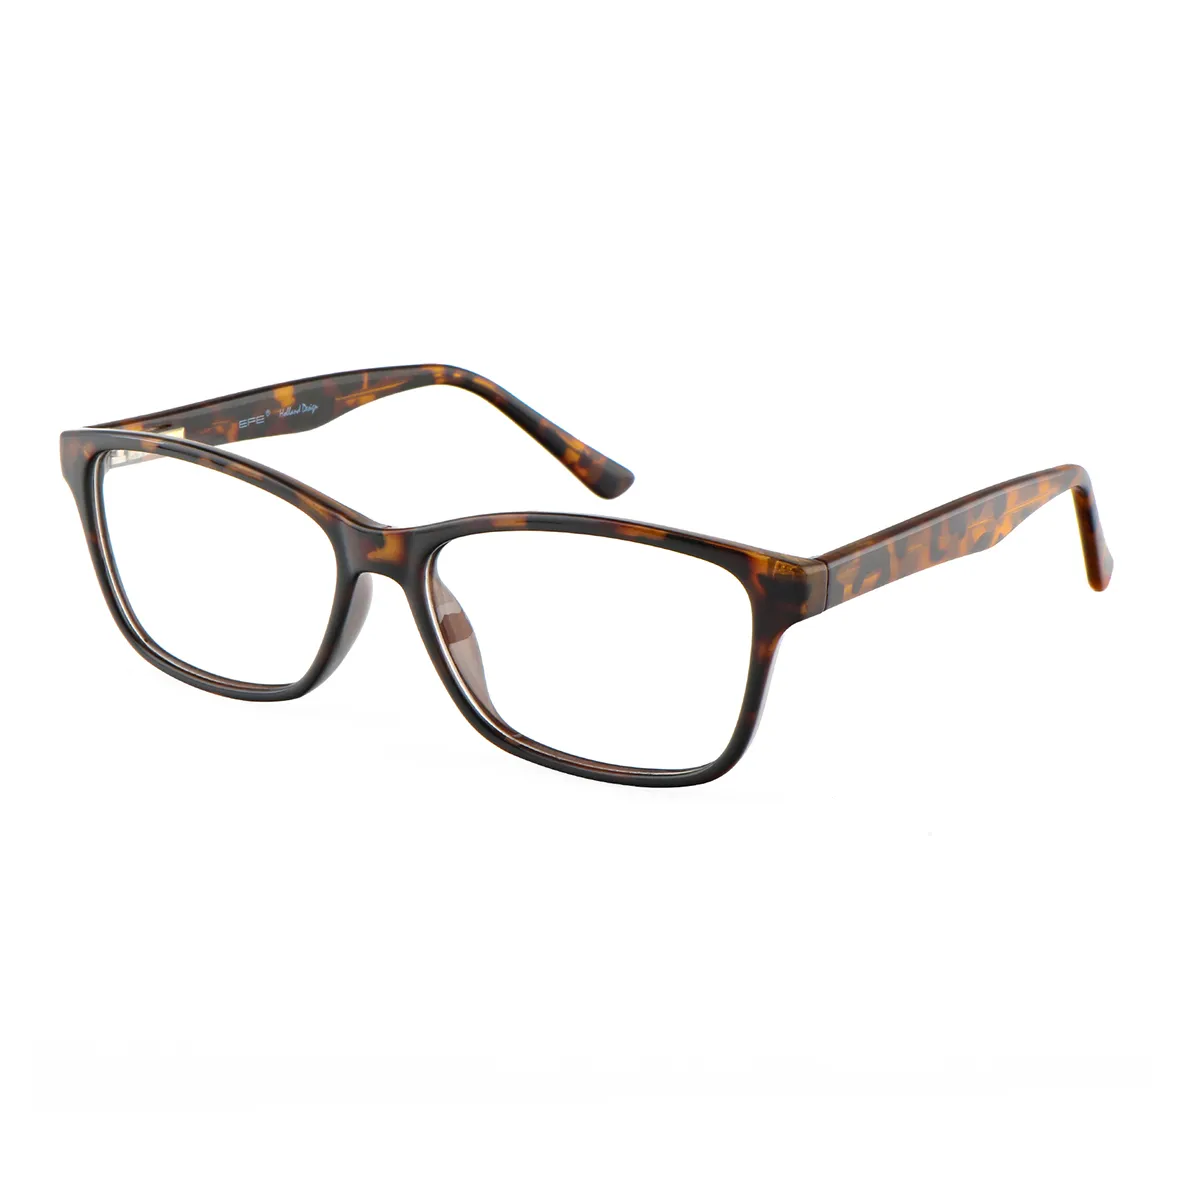 Haynes - Rectangle Tortoiseshell Glasses for Men & Women - EFE